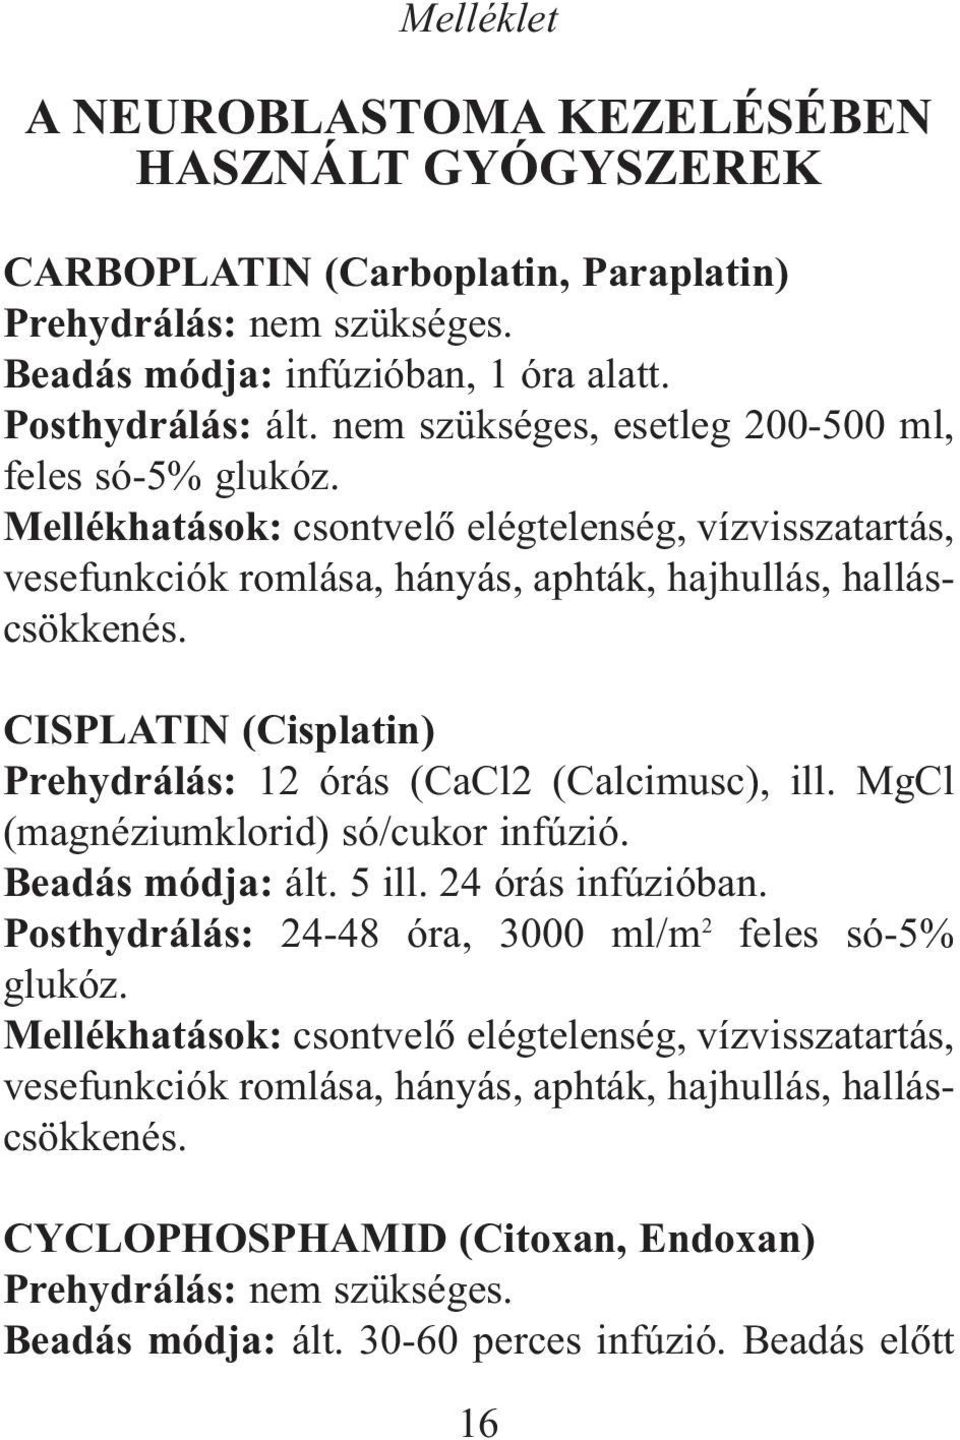 CISPLATIN (Cisplatin) Prehydrálás: 12 órás (CaCl2 (Calcimusc), ill. MgCl (magnéziumklorid) só/cukor infúzió. Beadás módja: ált. 5 ill. 24 órás infúzióban.